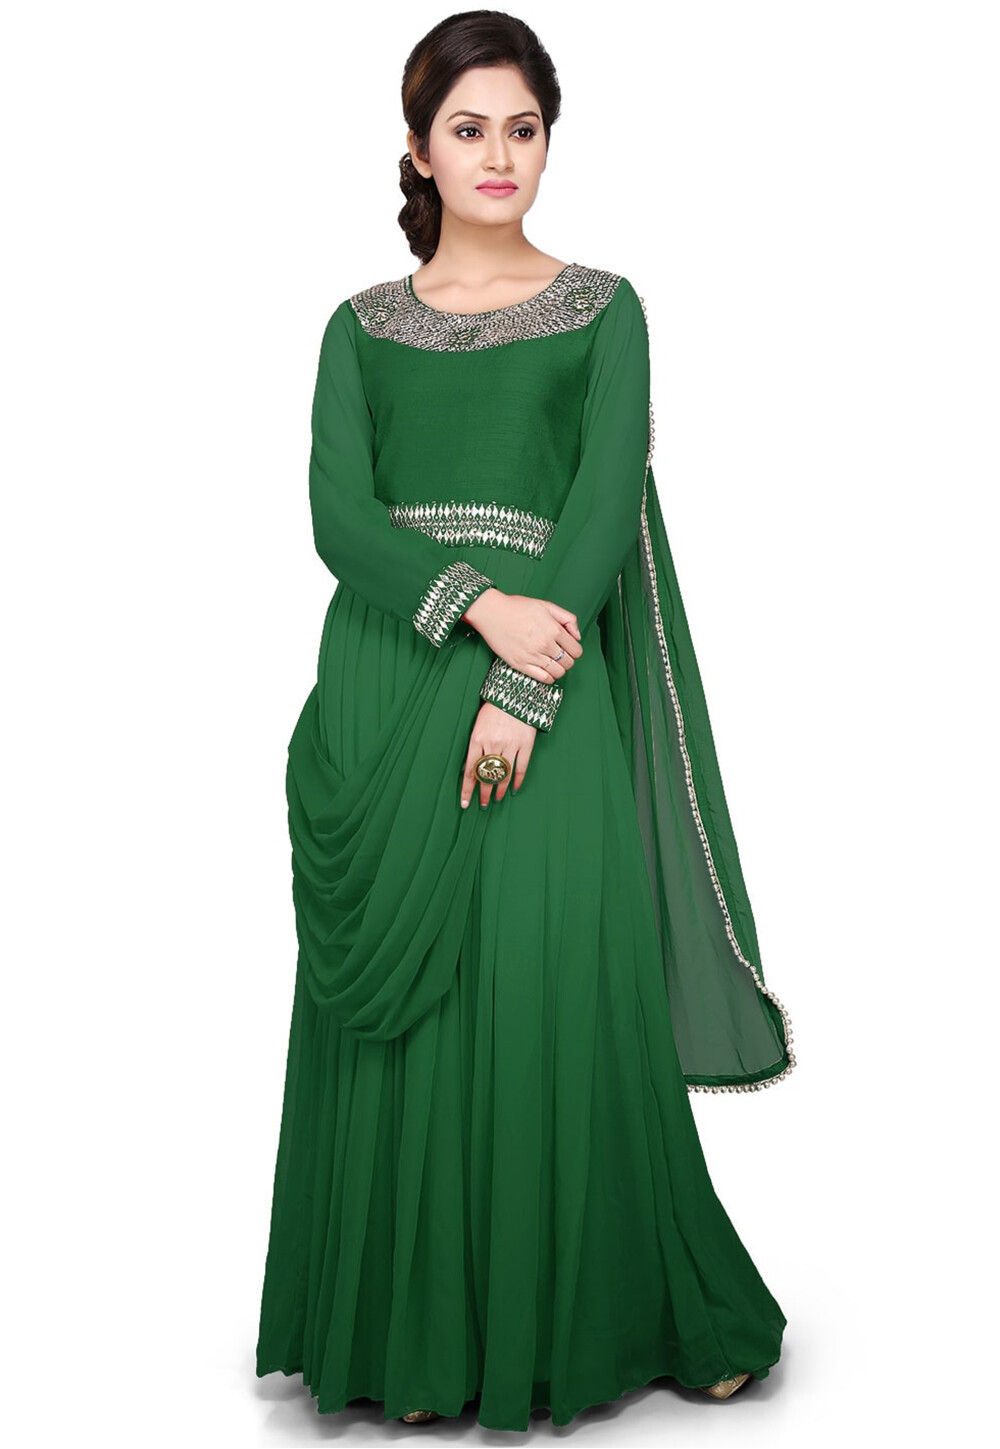 Embellished Georgette Long Gown in Dark Green : TJW2228